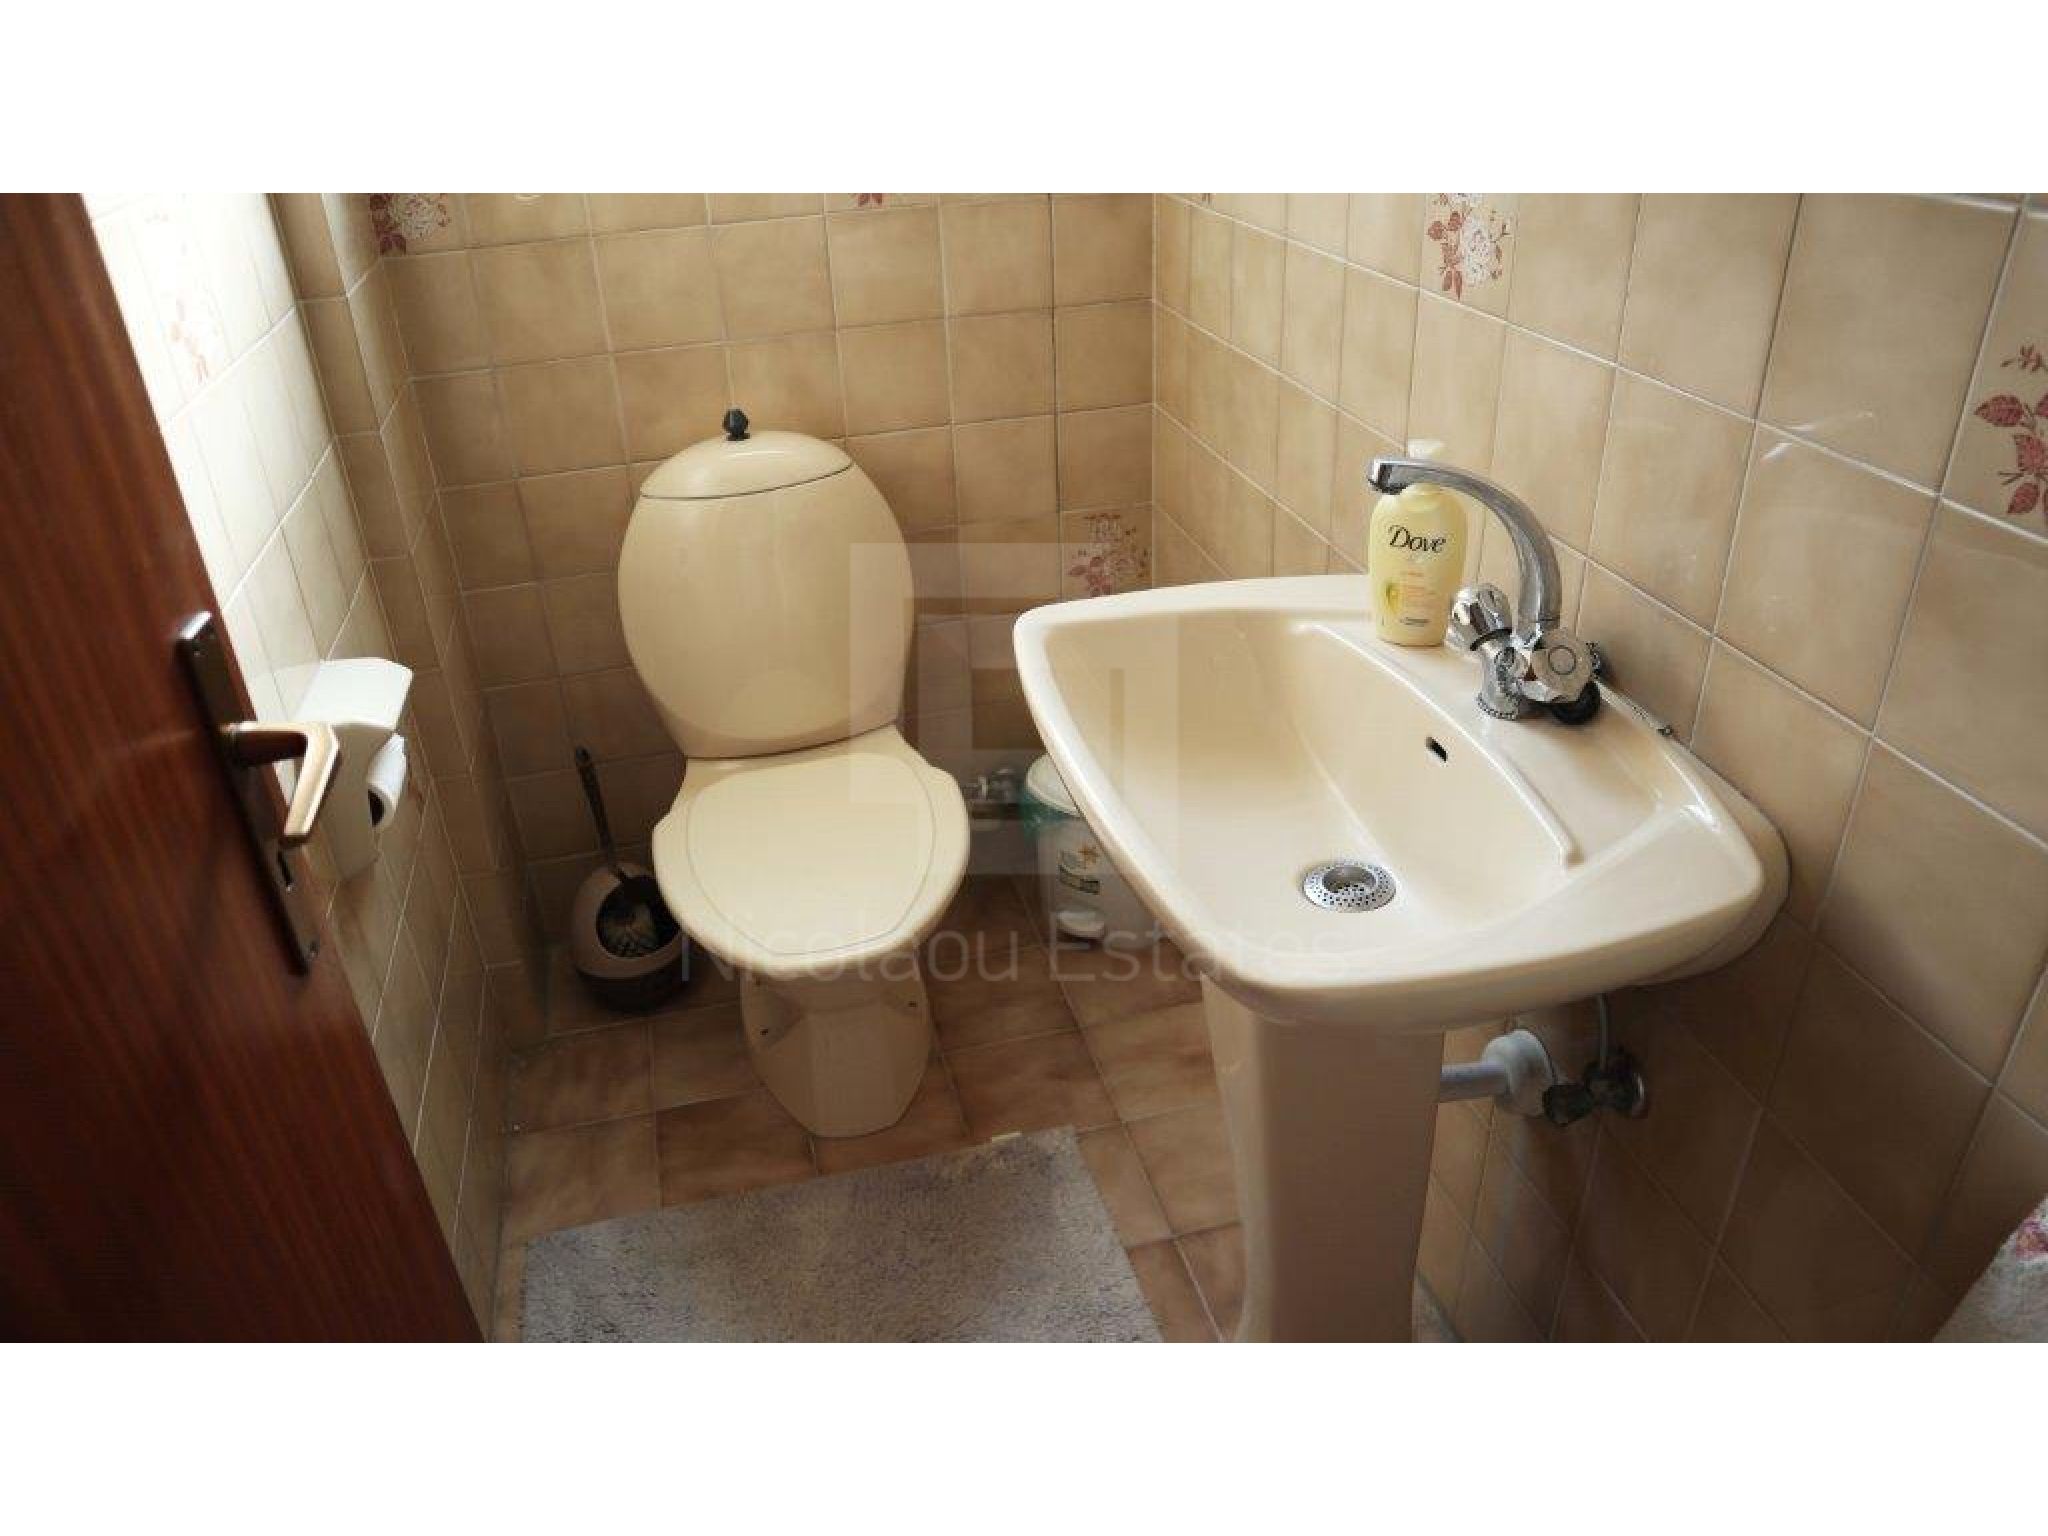 https://www.propertiescy.com/images/uploads/listings/large/12113-1567491038_neapolis-apartment-10.jpg